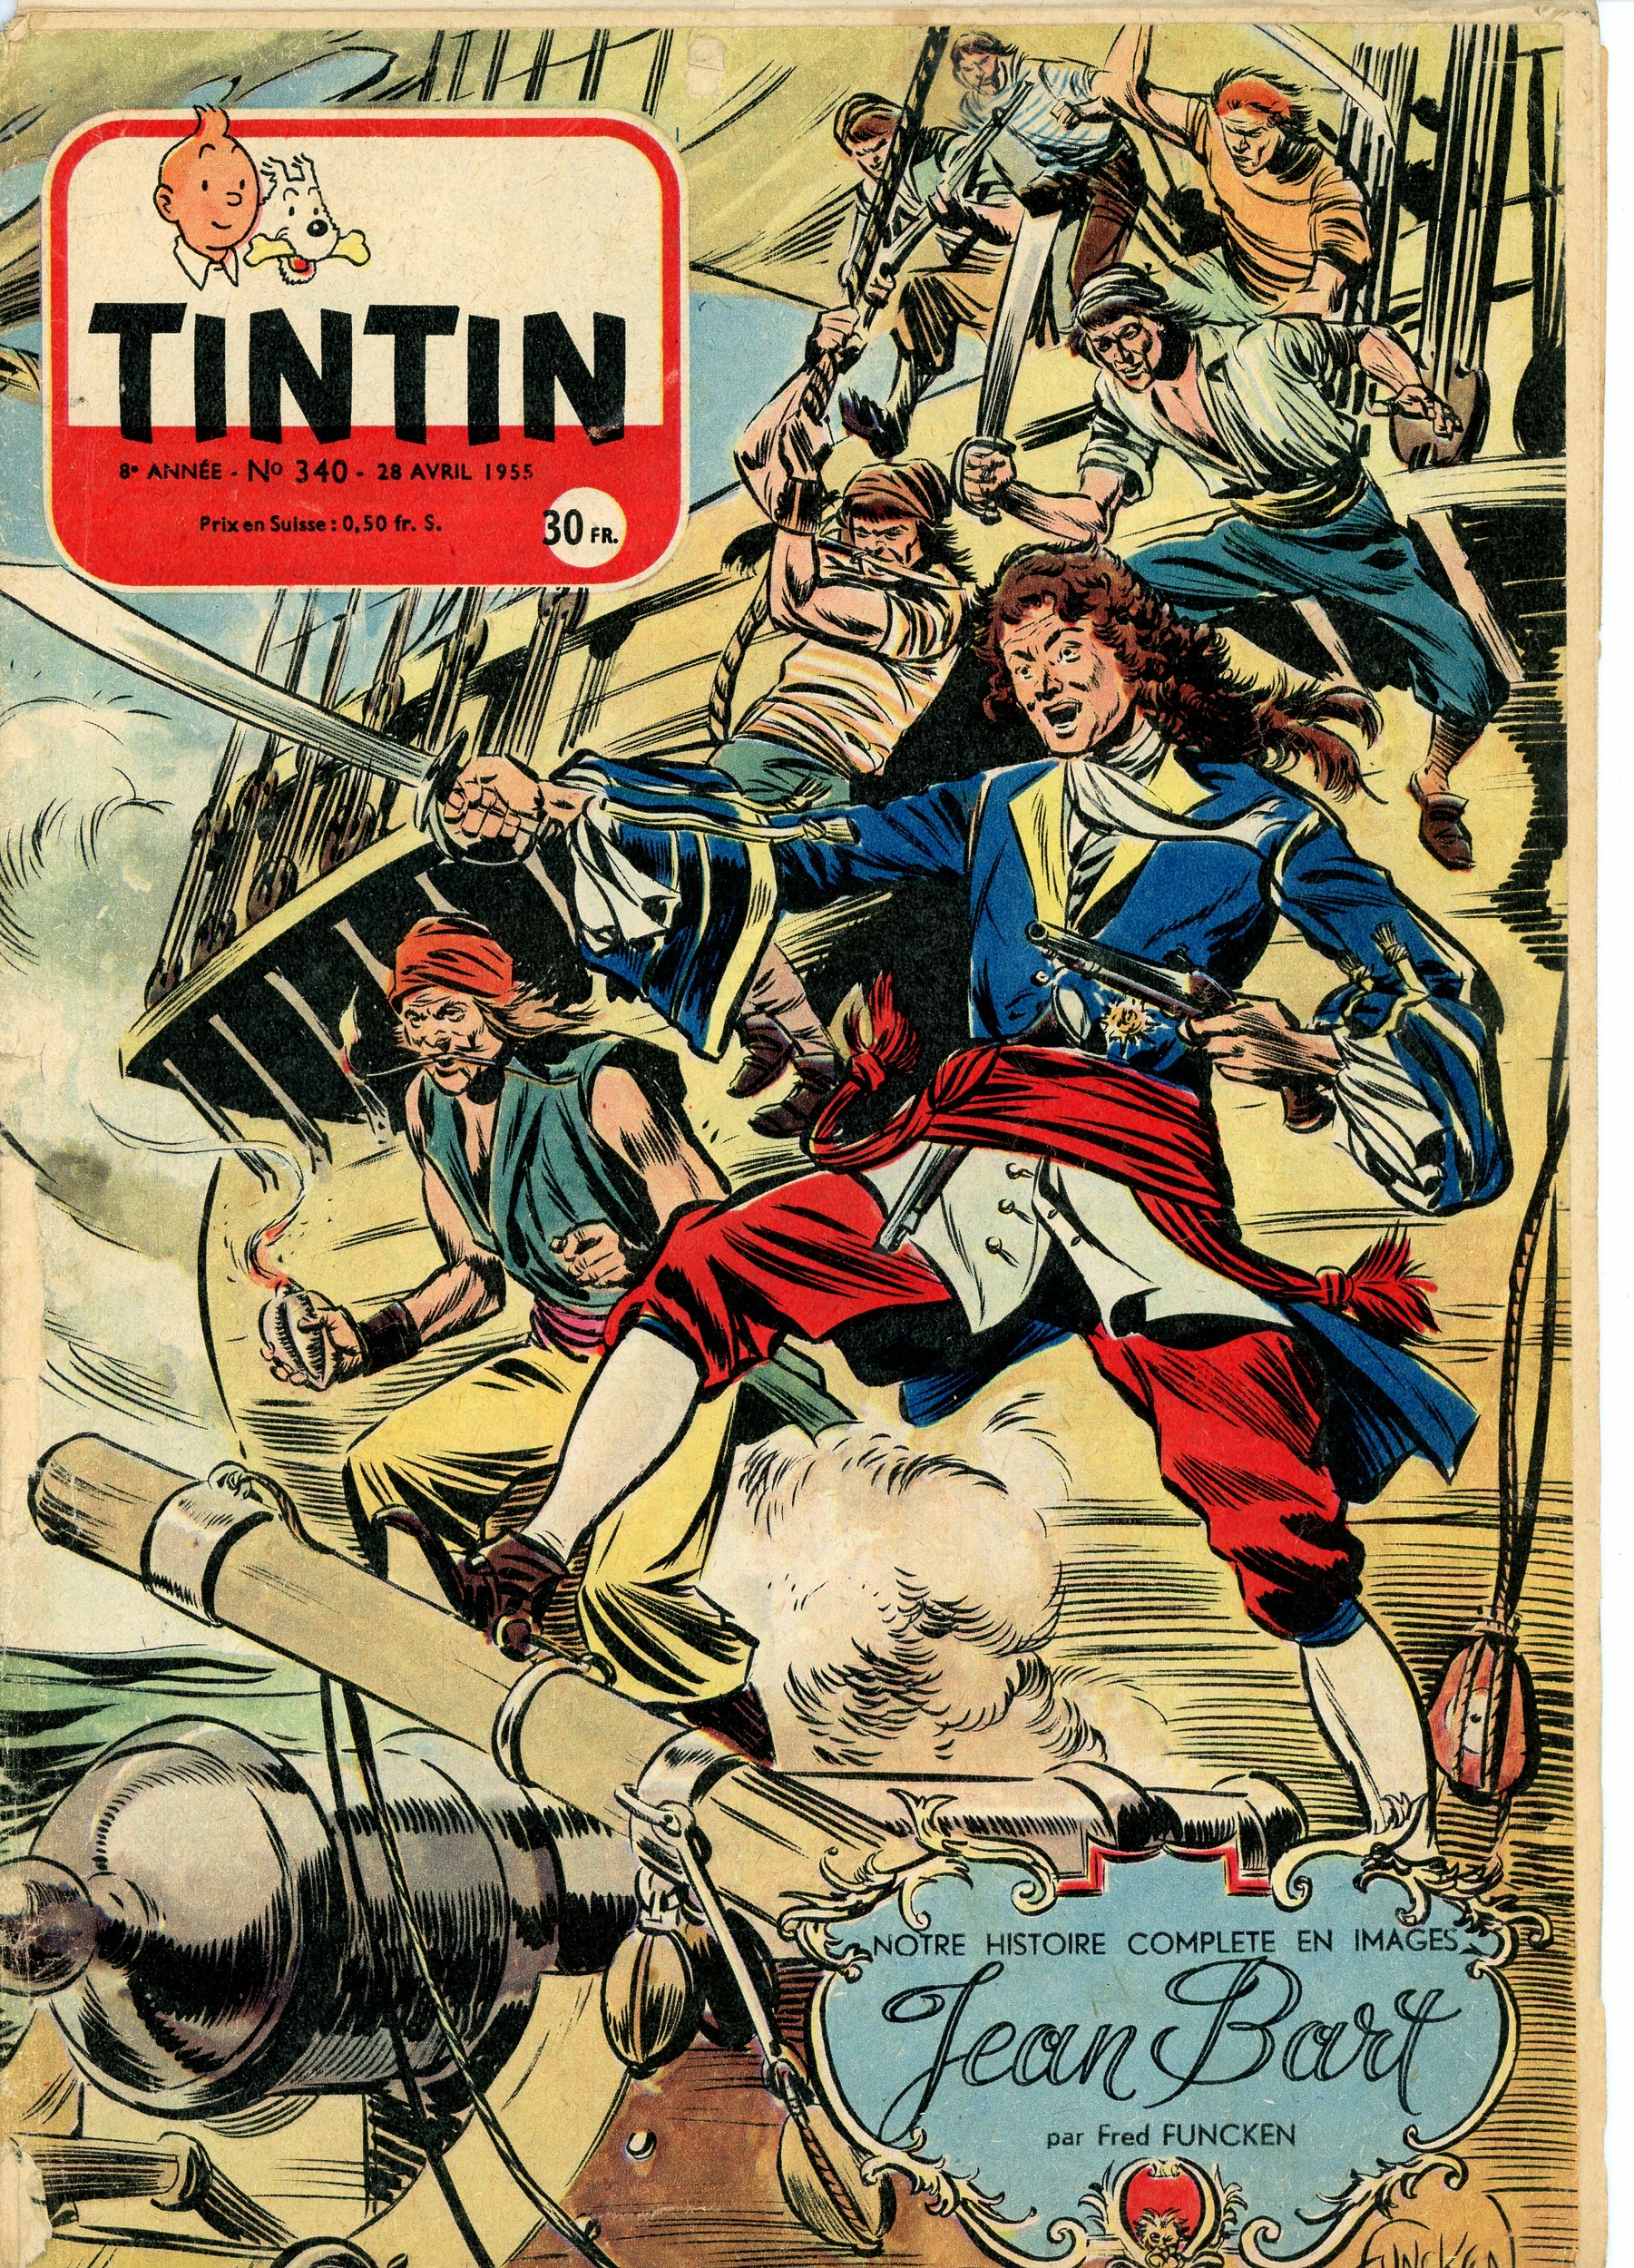 JOURNAL TINTIN N° 340 - 28 AVRIL 1955 - L'AFFAIRE TOURNESOL - ARTICLE ALBERT EINSTEIN